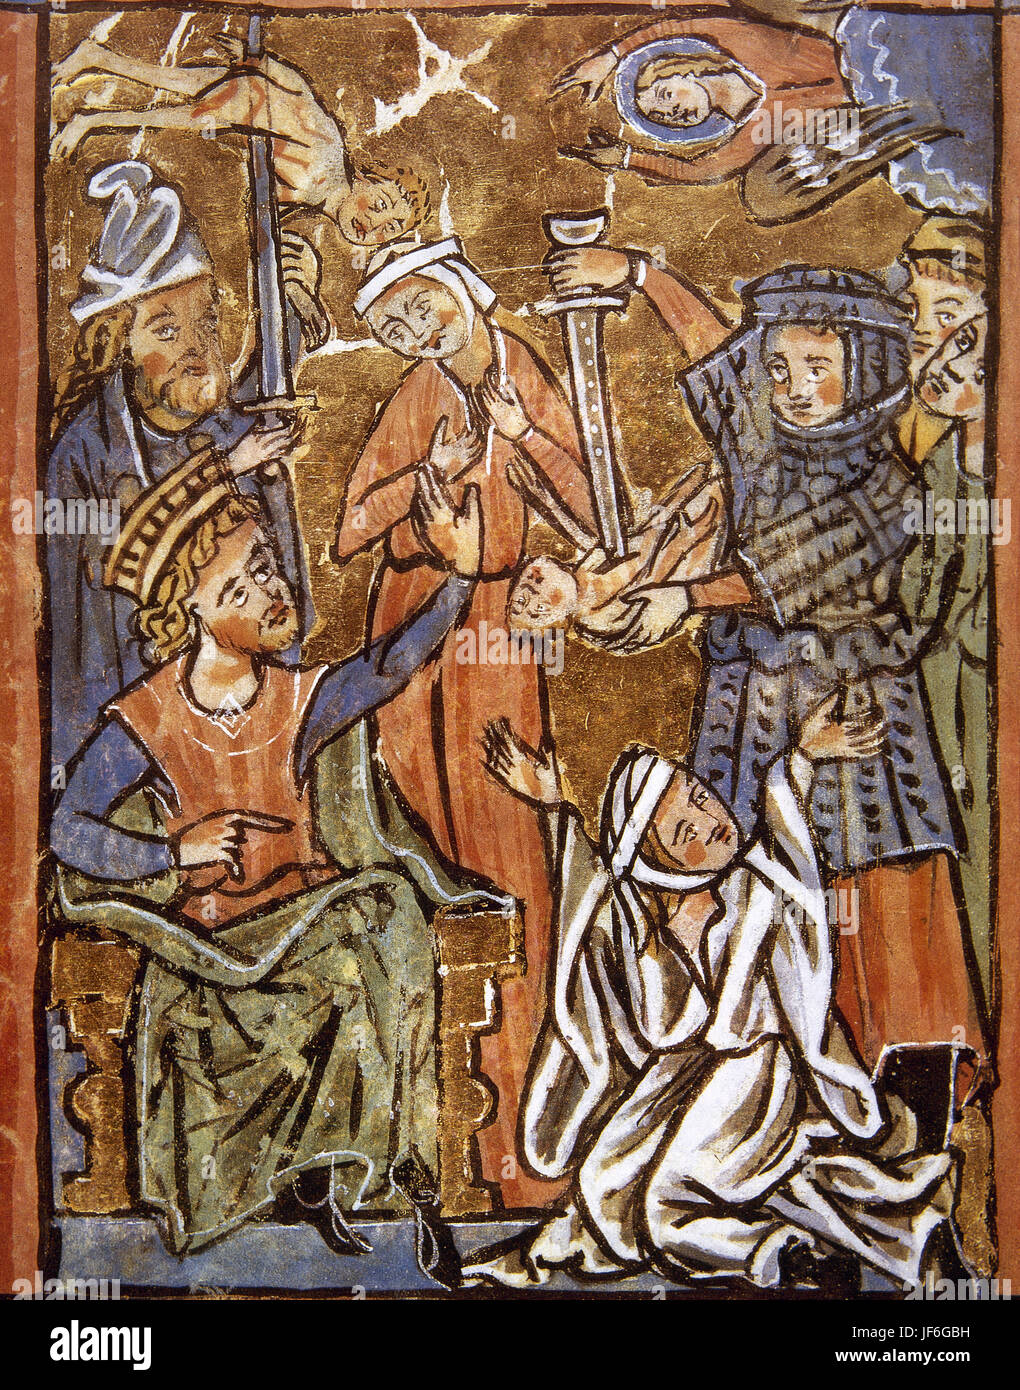 Si la matanza de inocentes. Herodes el Grande sitiing en el trono. Miniatura. Salterio, del siglo XV. Foto de stock